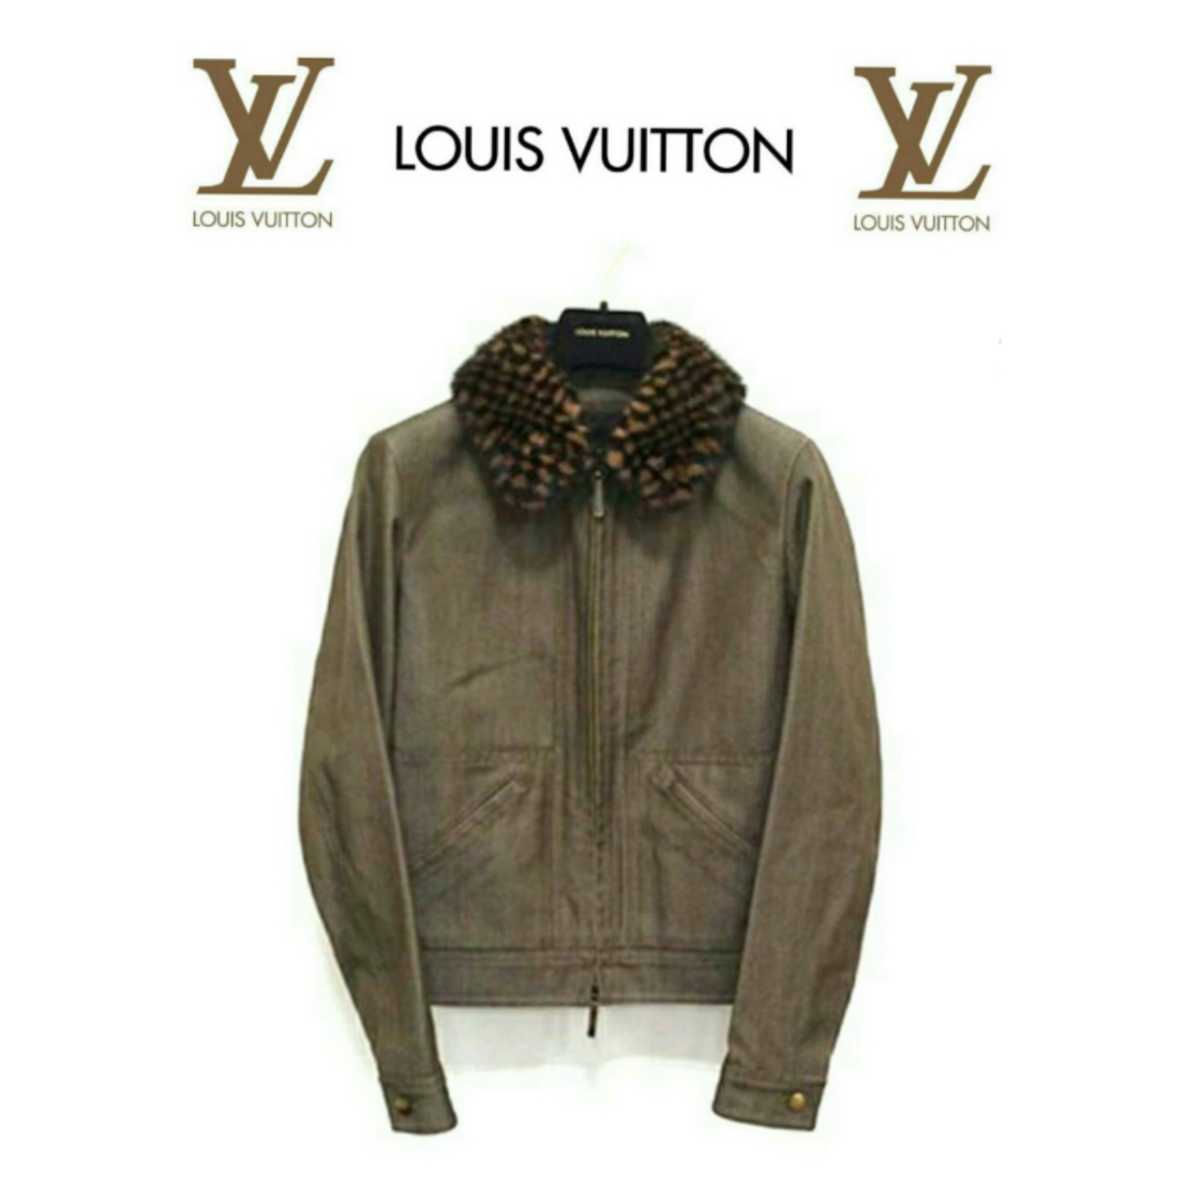 お値打ち価格で 即完売 LOUIS VUITTON ルイヴィトン正規品 フランス製 最高級